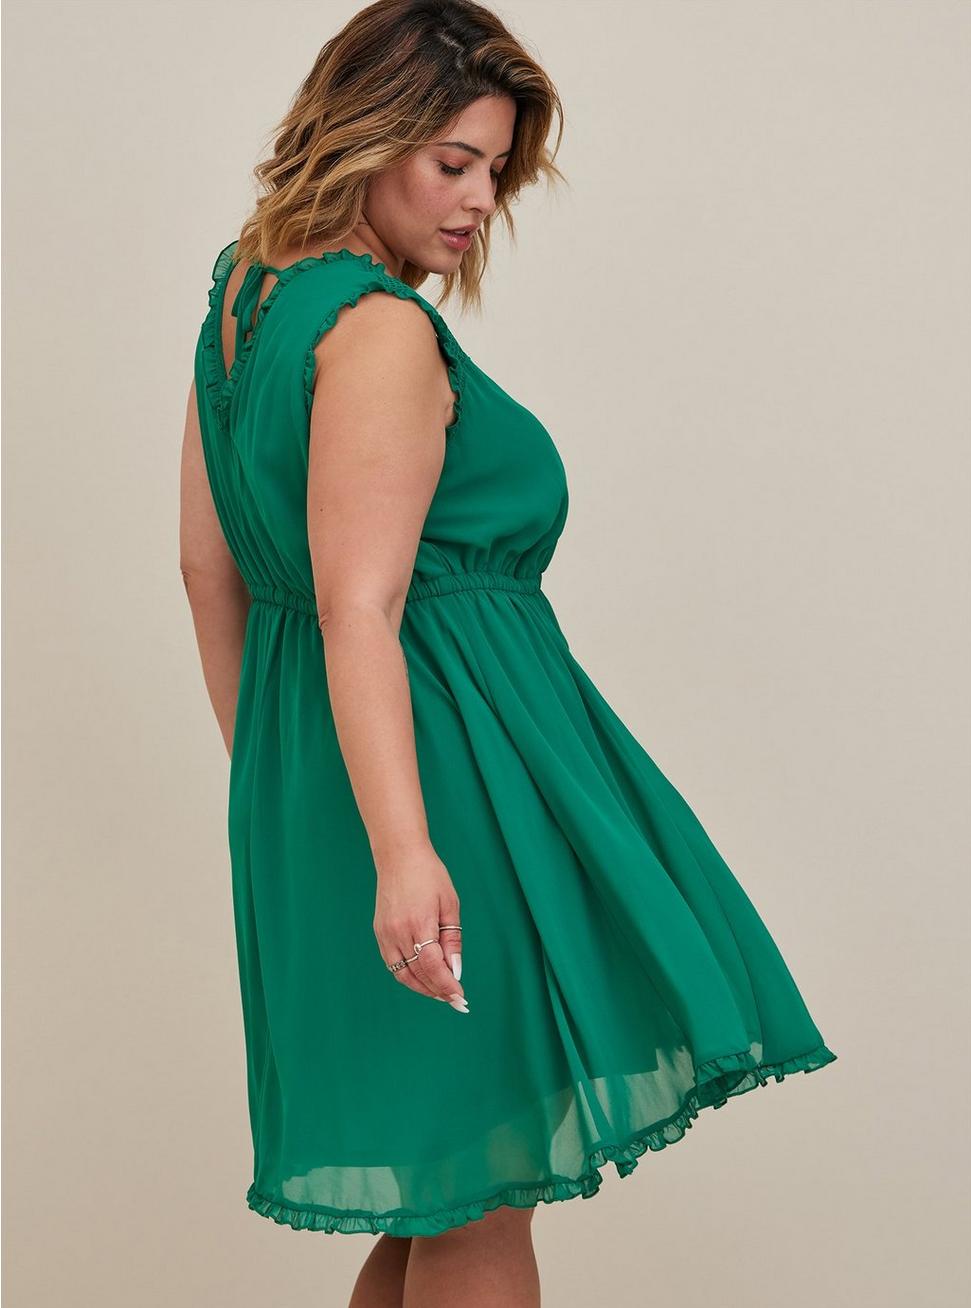 Plus Size Mini Chiffon Ruffle Dress, GREEN, alternate